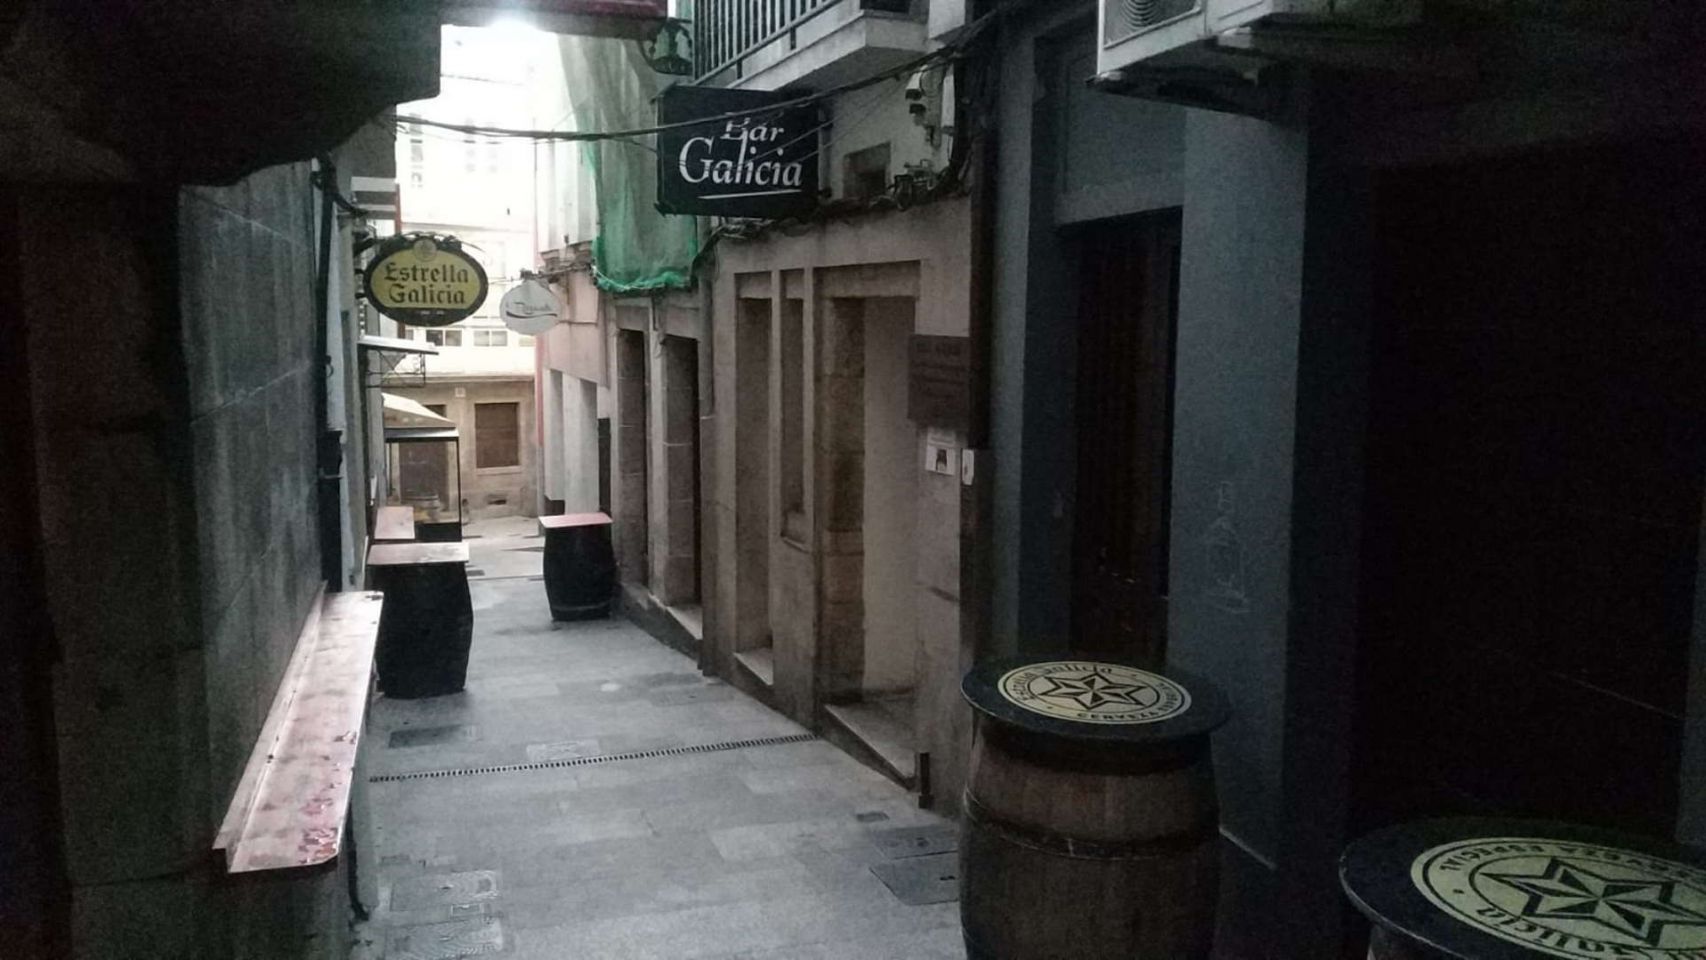 Bar Galicia de Betanzos (A Coruña)